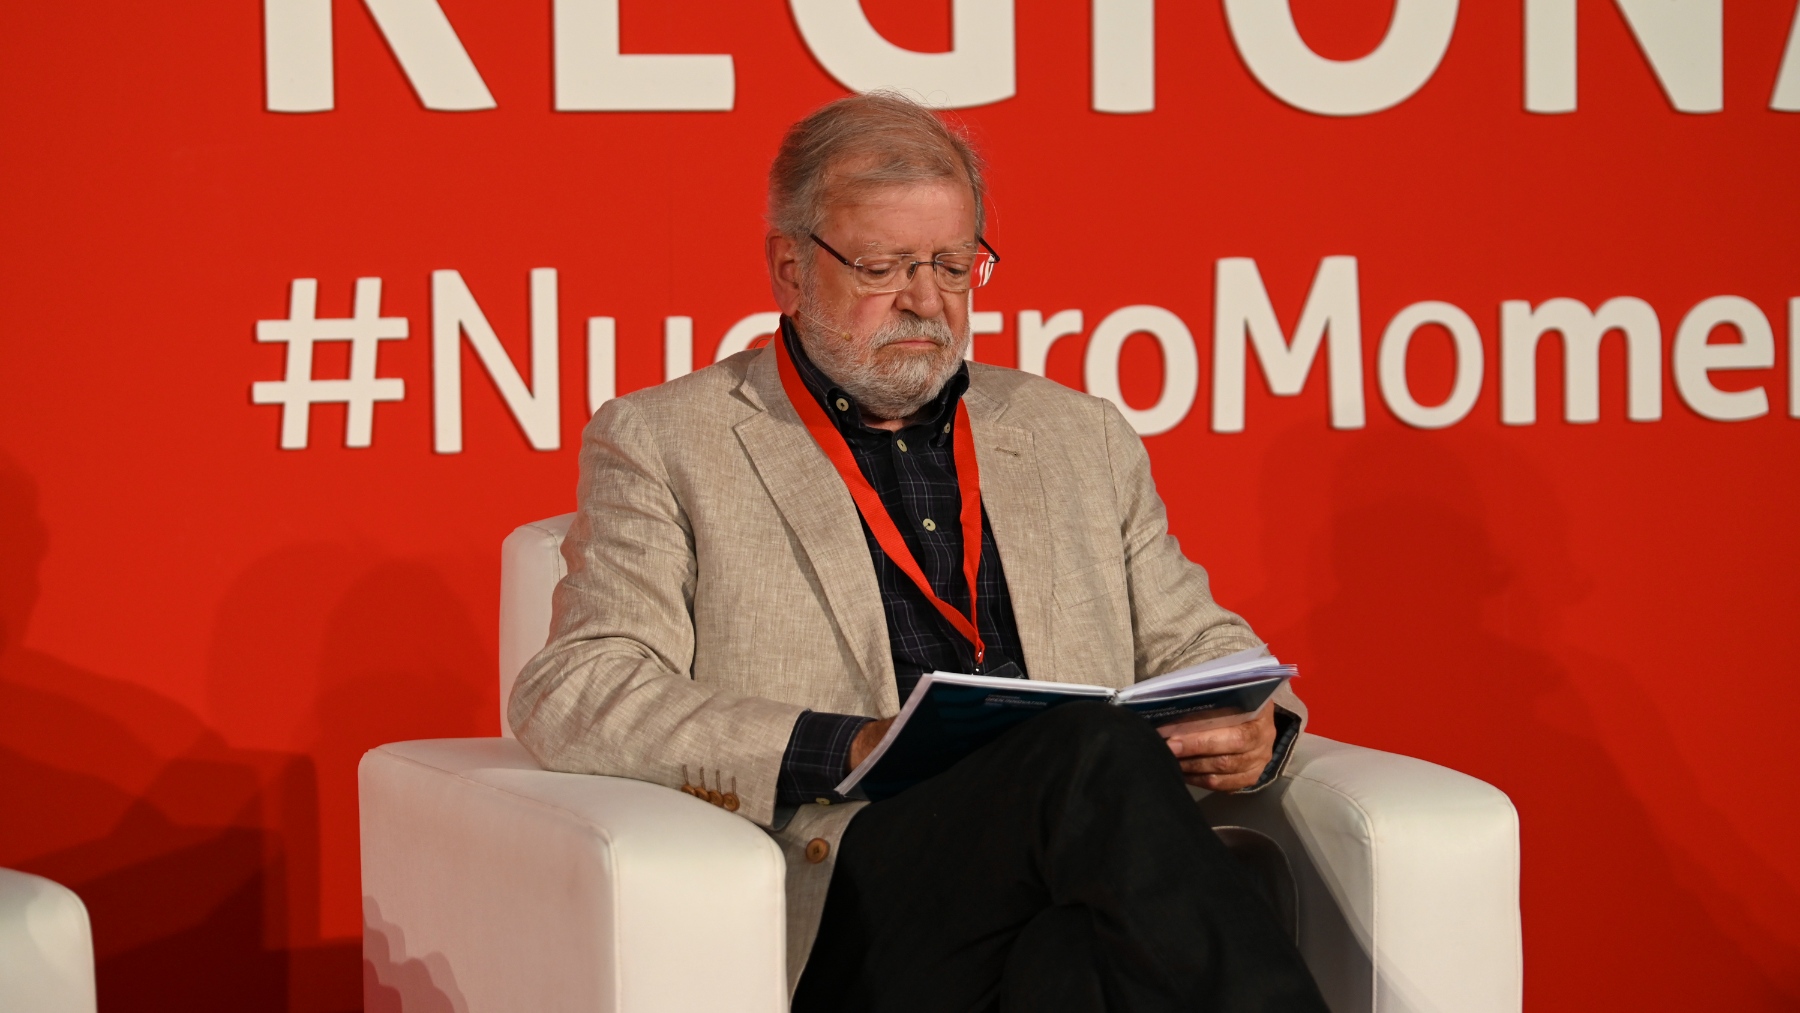 El ex presidente de la Junta de Extremadura Juan Carlos Rodríguez Ibarra. (Foto: Ep)